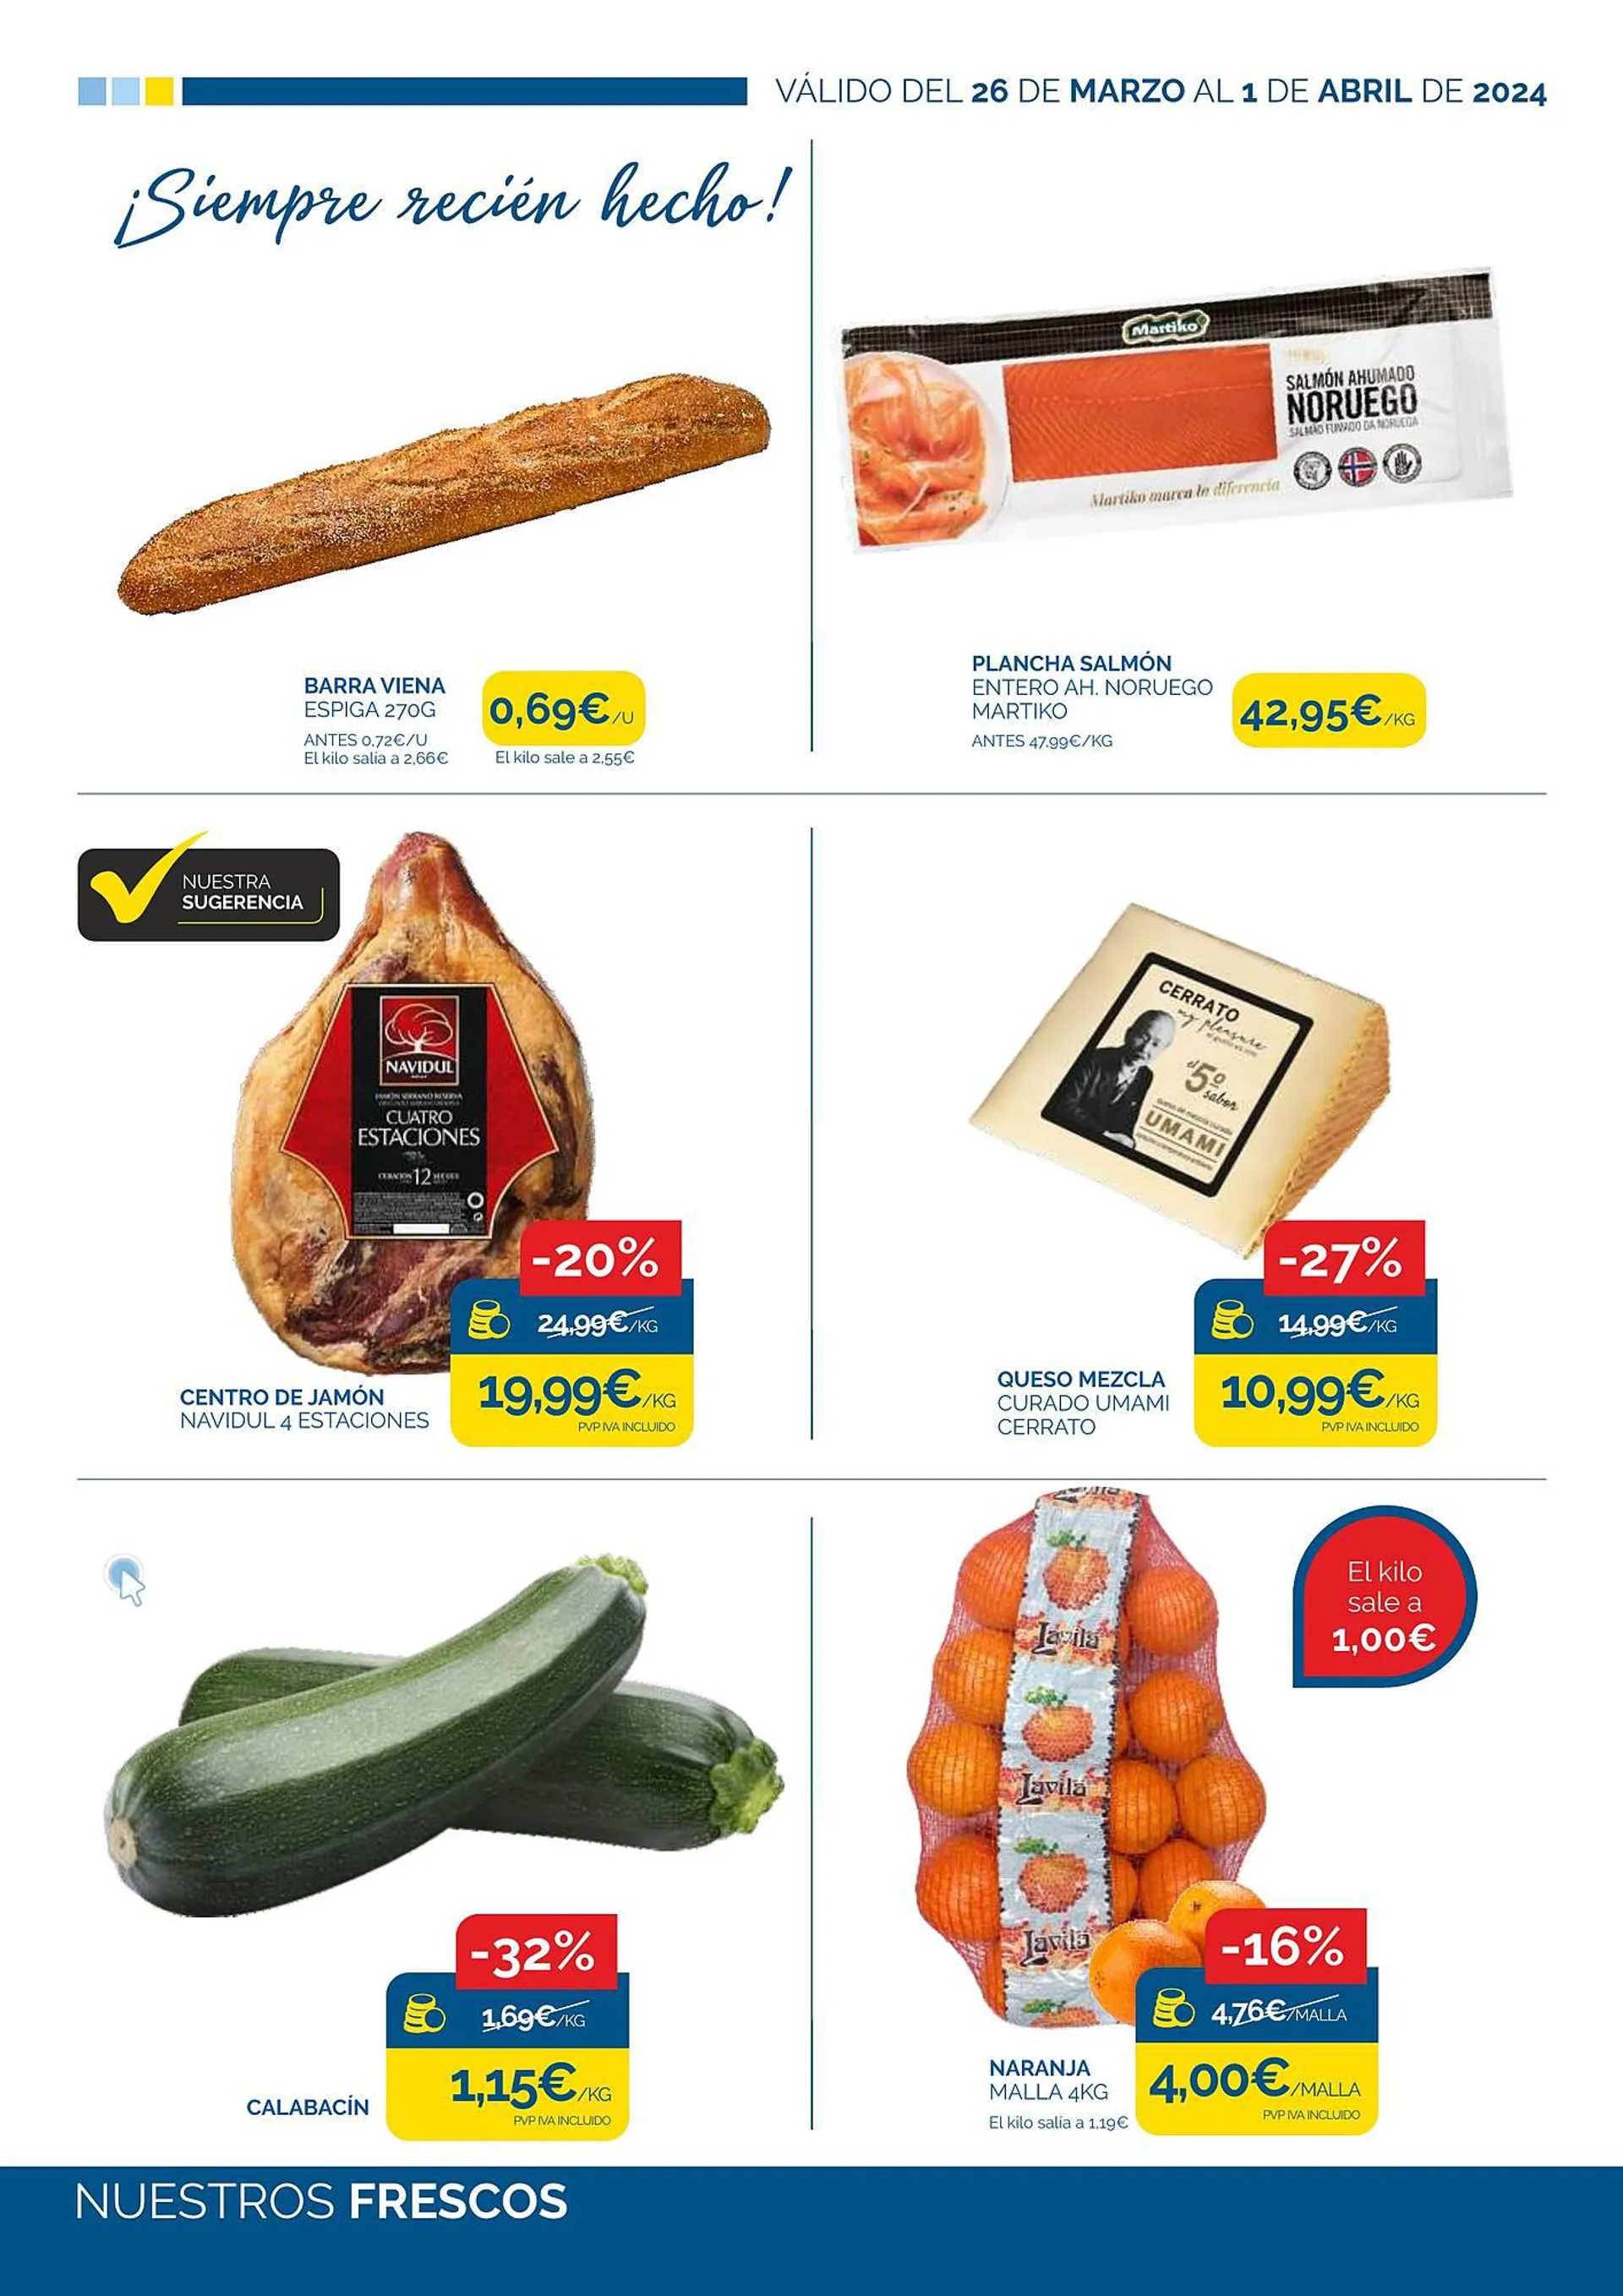 Catálogo de Folleto Supermercados La Despensa 26 de marzo al 1 de abril 2024 - Página 2